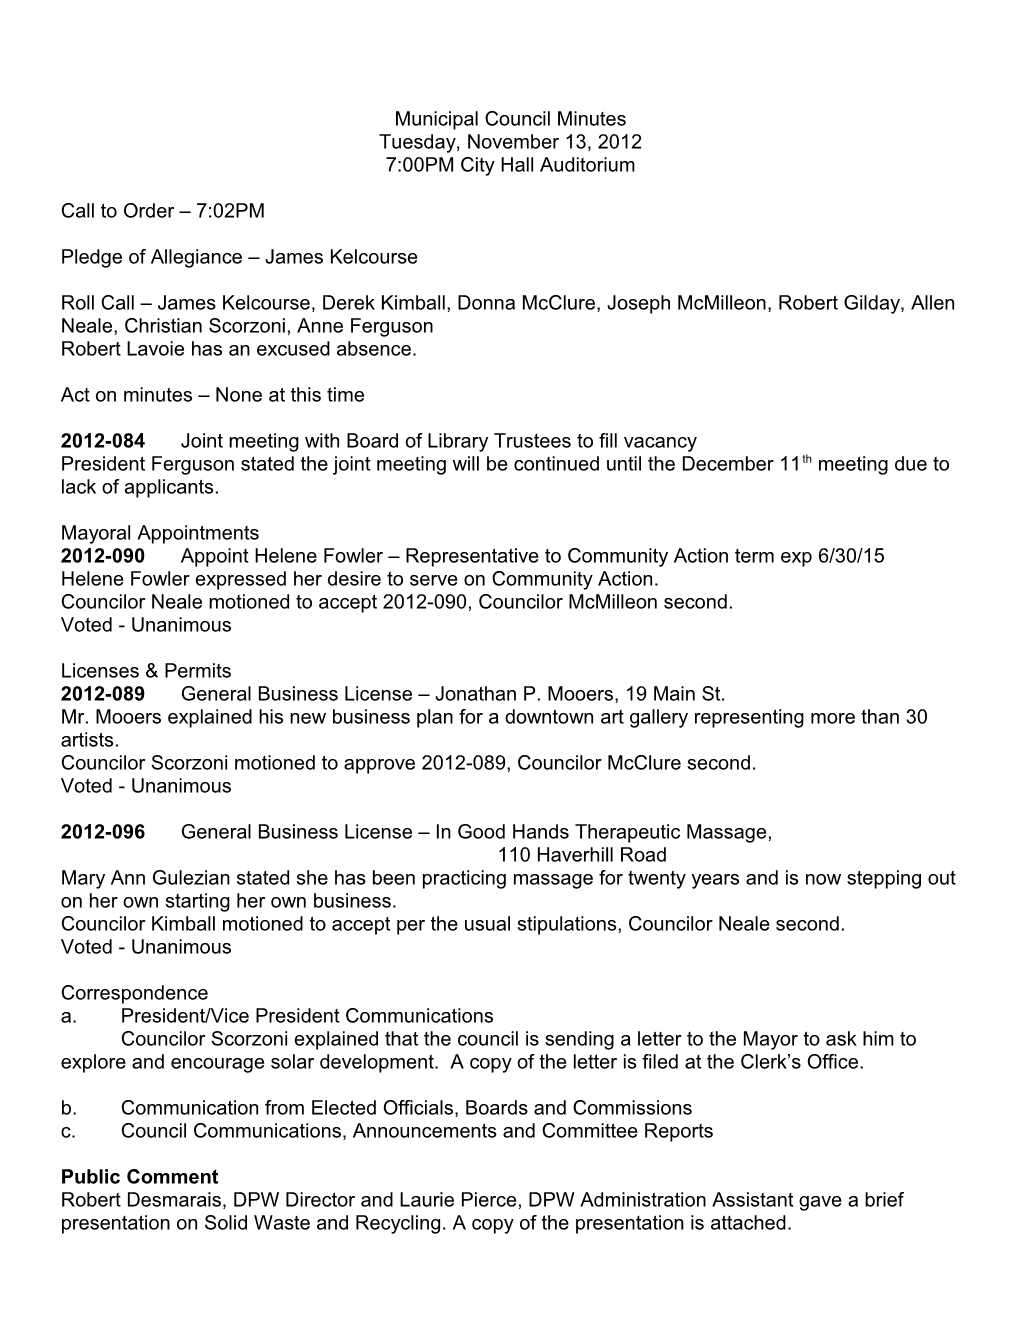 11-13-2012 Council Minutes